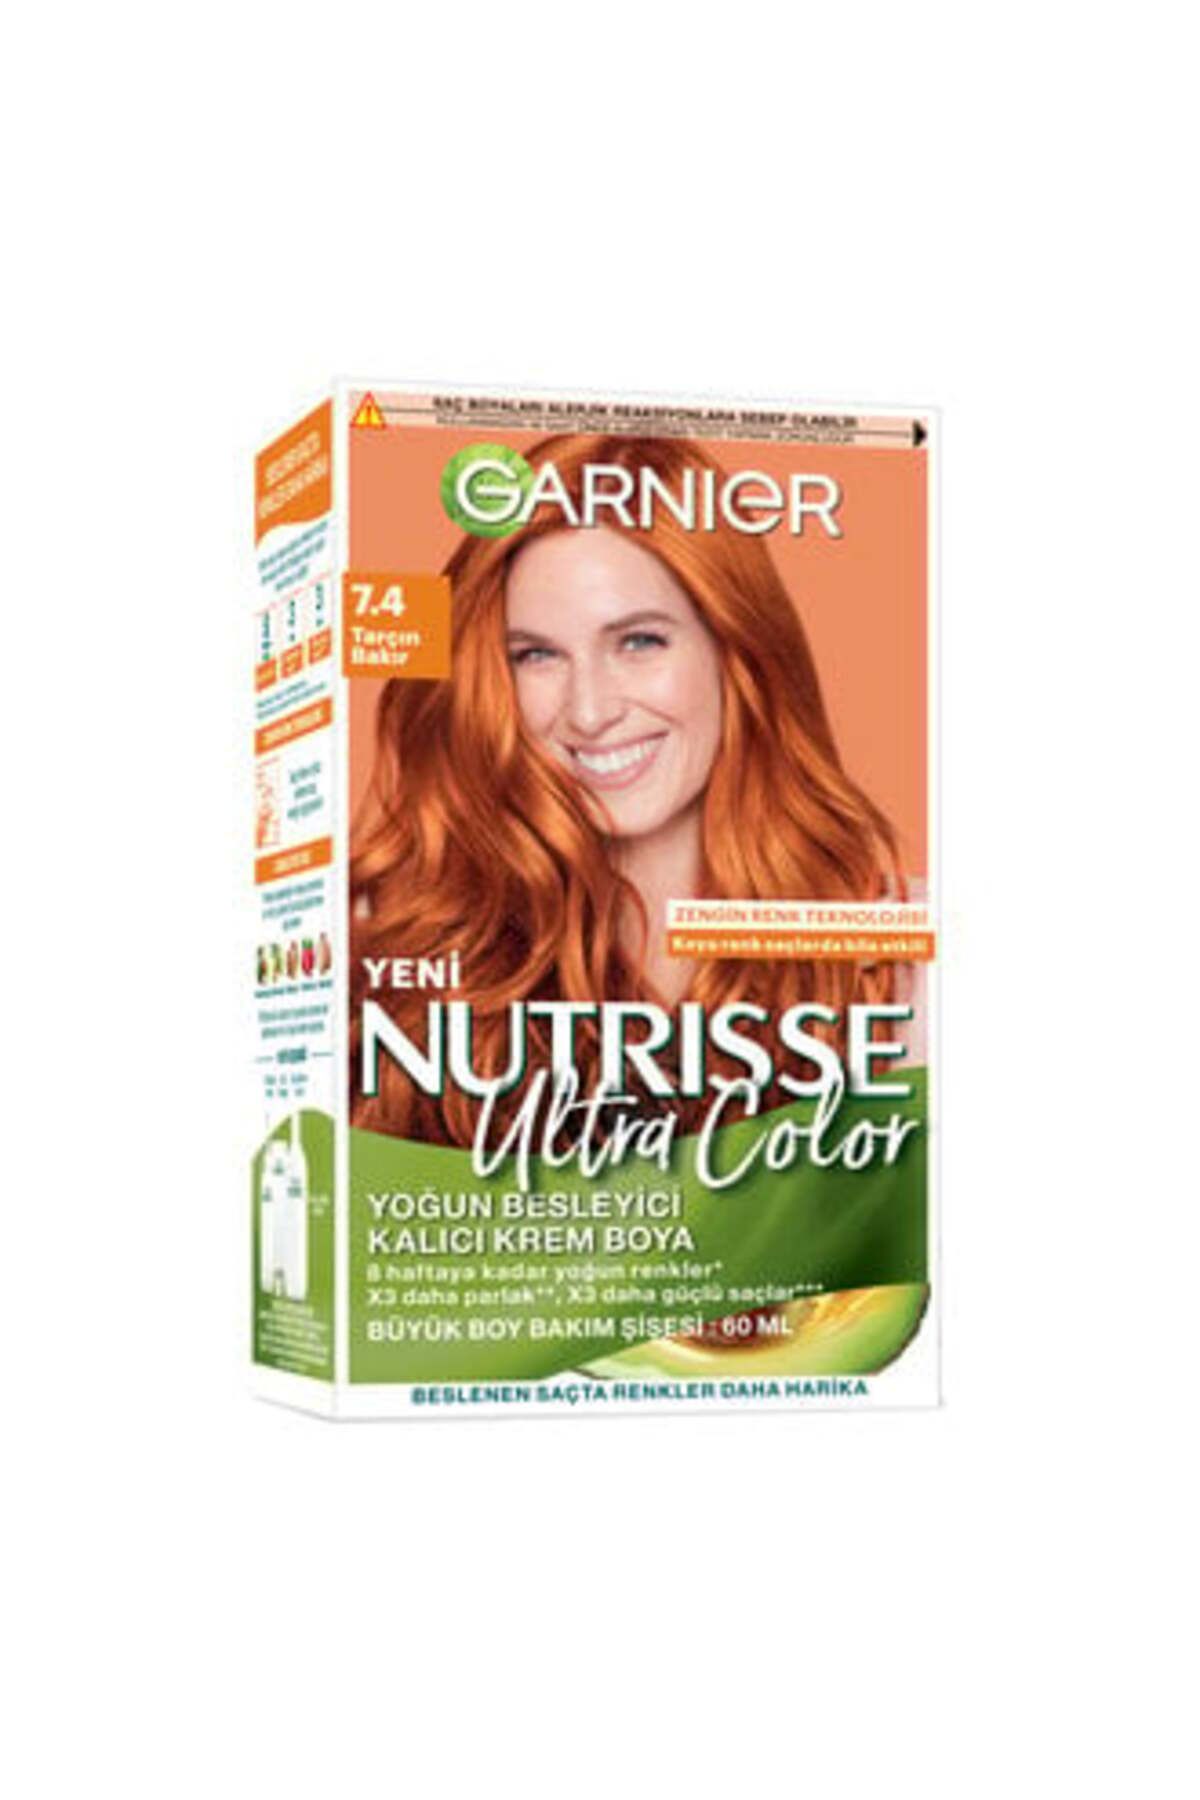 Garnier Nutrisse Ultra Color Saç Boyası 7.4 Tarçın Bakır ( 1 ADET )